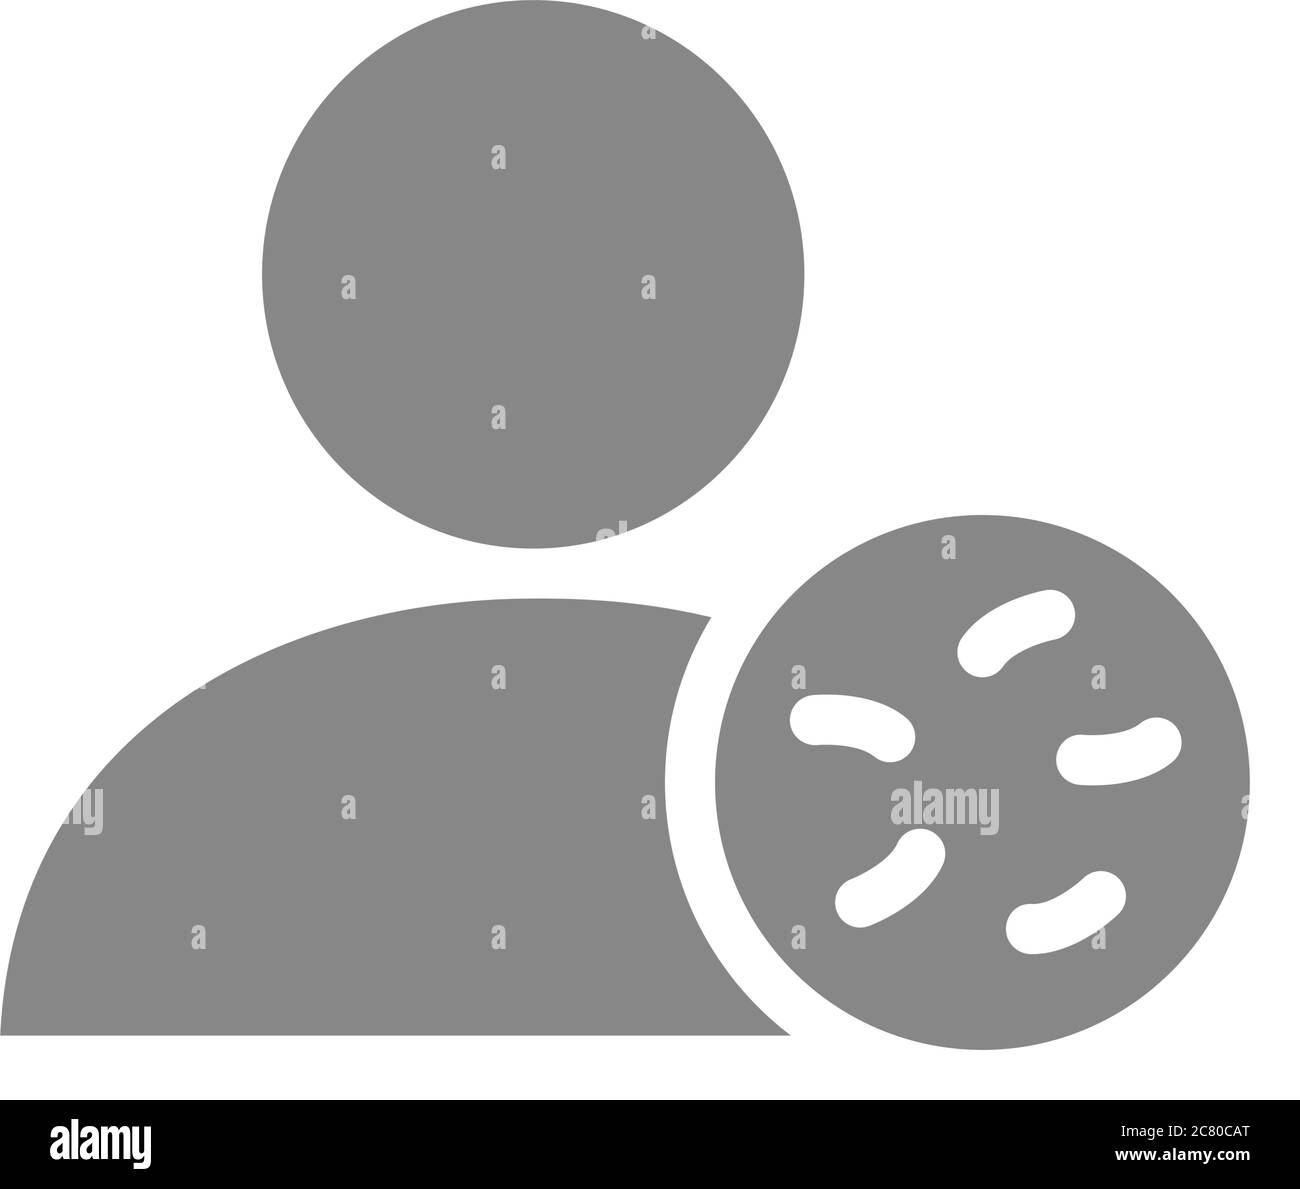 Profil utilisateur avec icône grise de bactéries. Infections, coronavirus, symbole d'interdiction d'admission Illustration de Vecteur